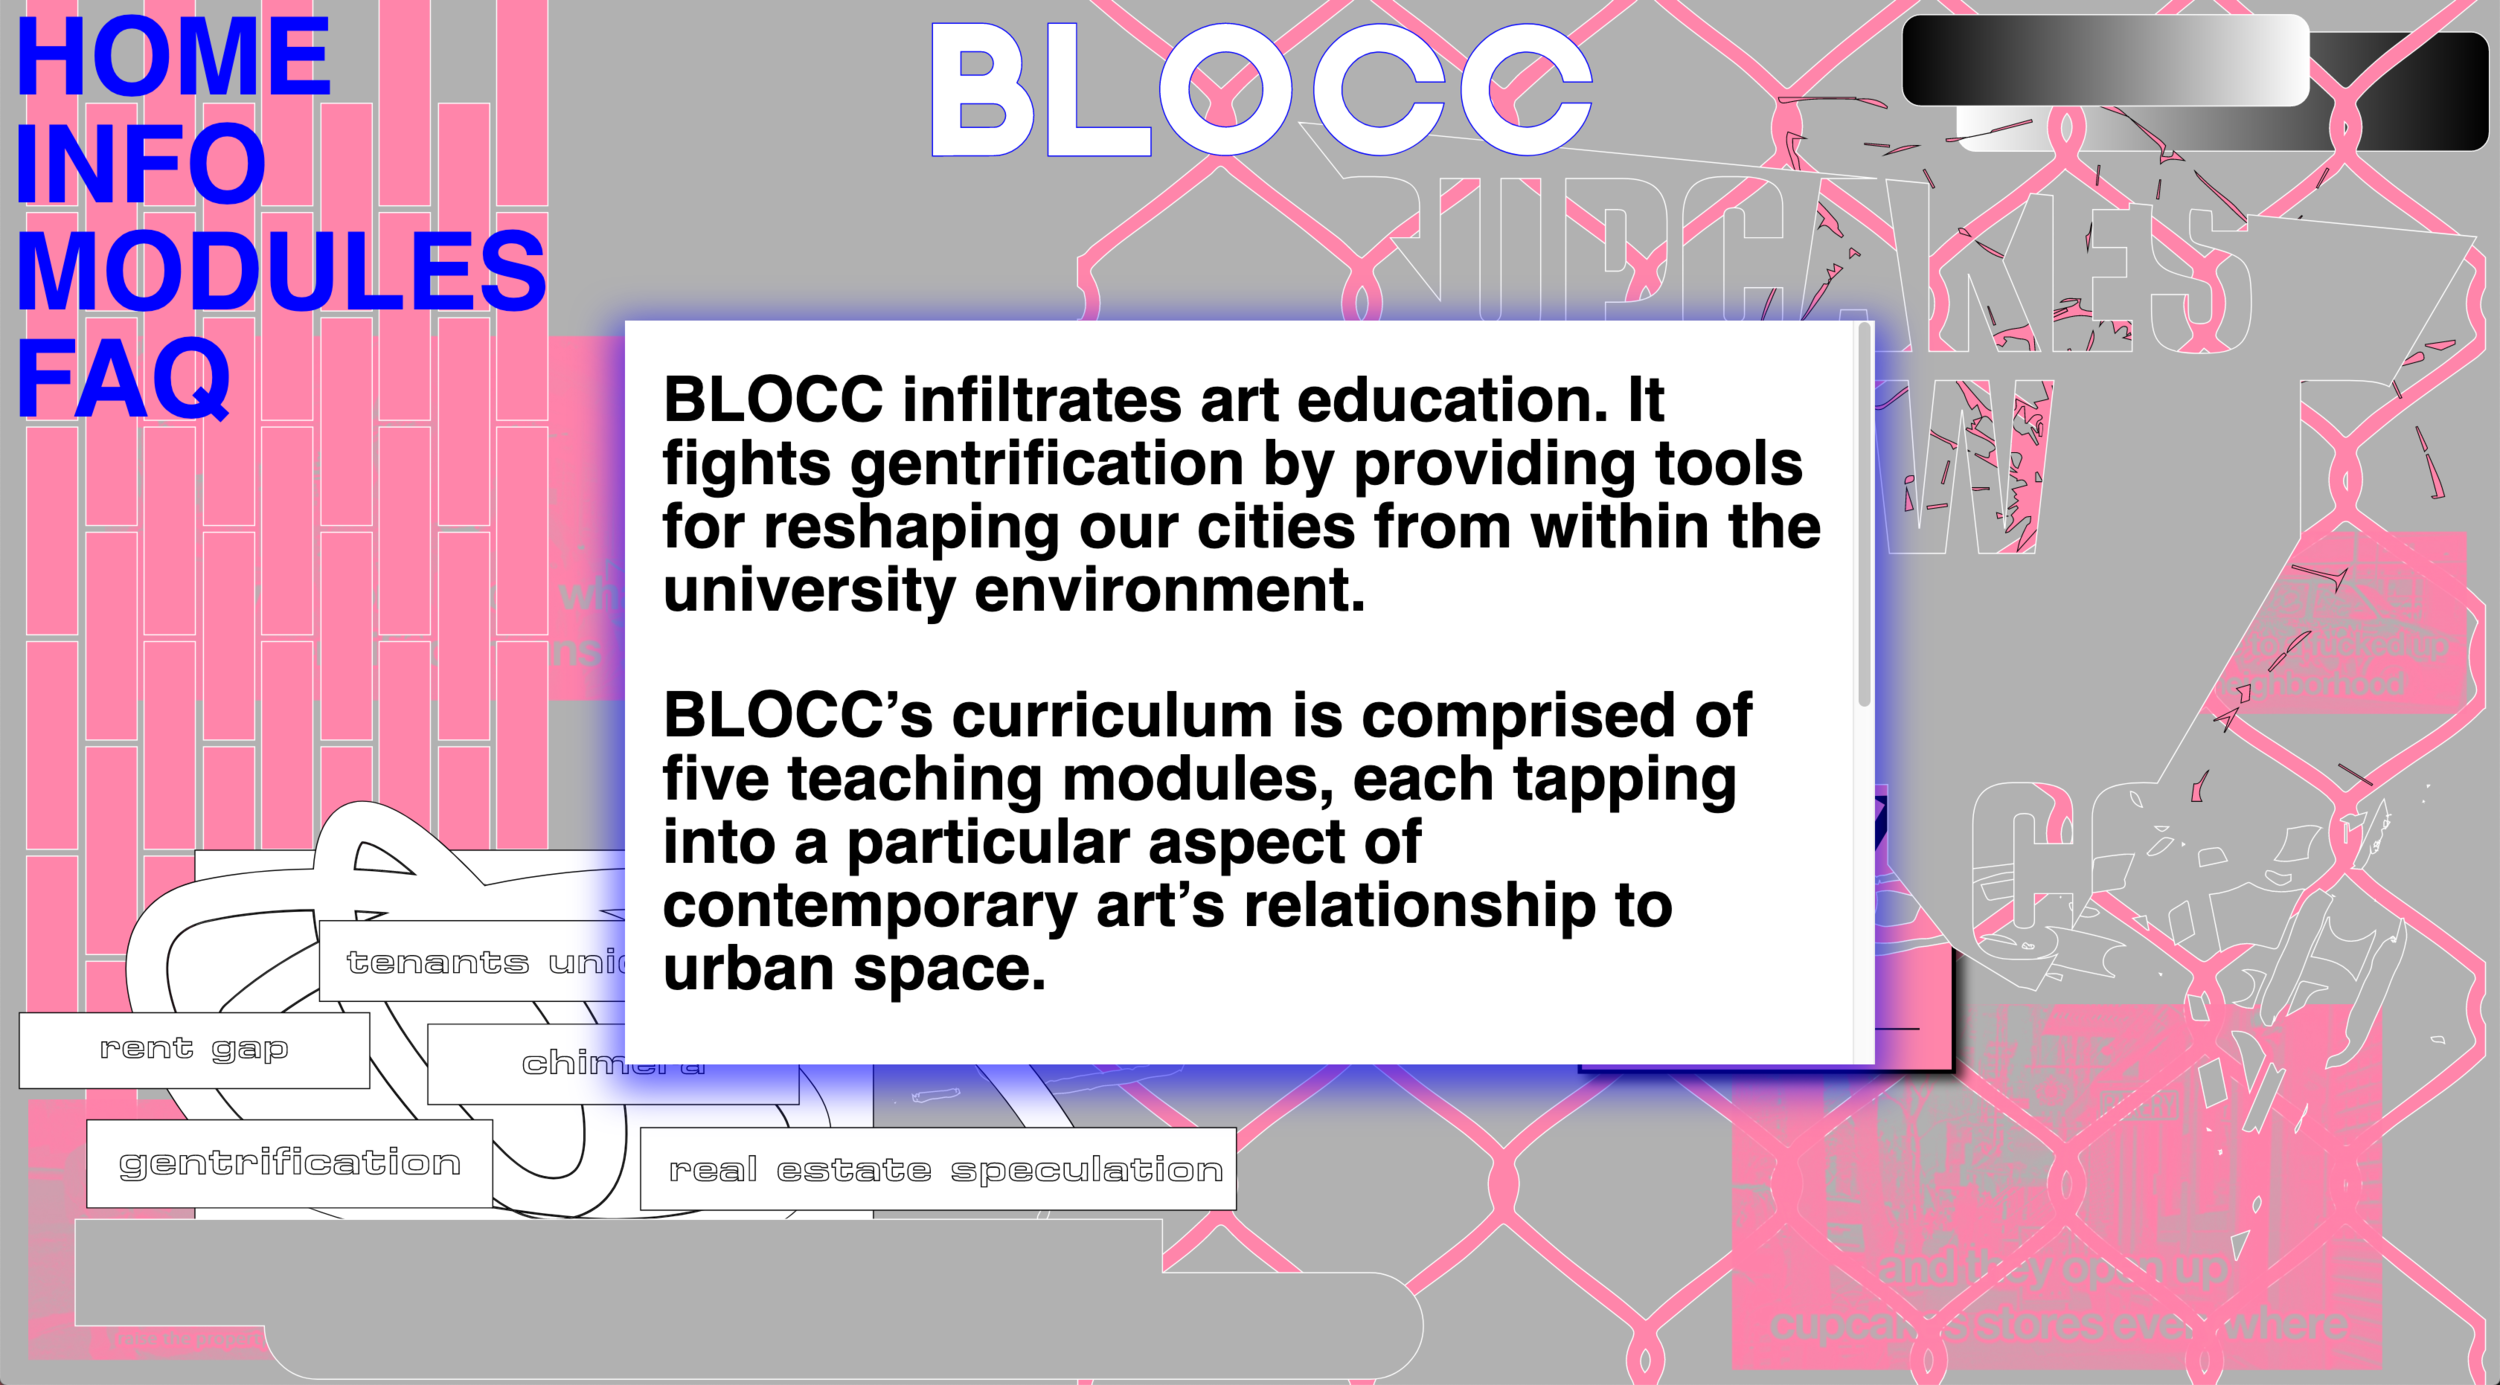 BLOCC (Building Leverage Over Creative Capitalism)